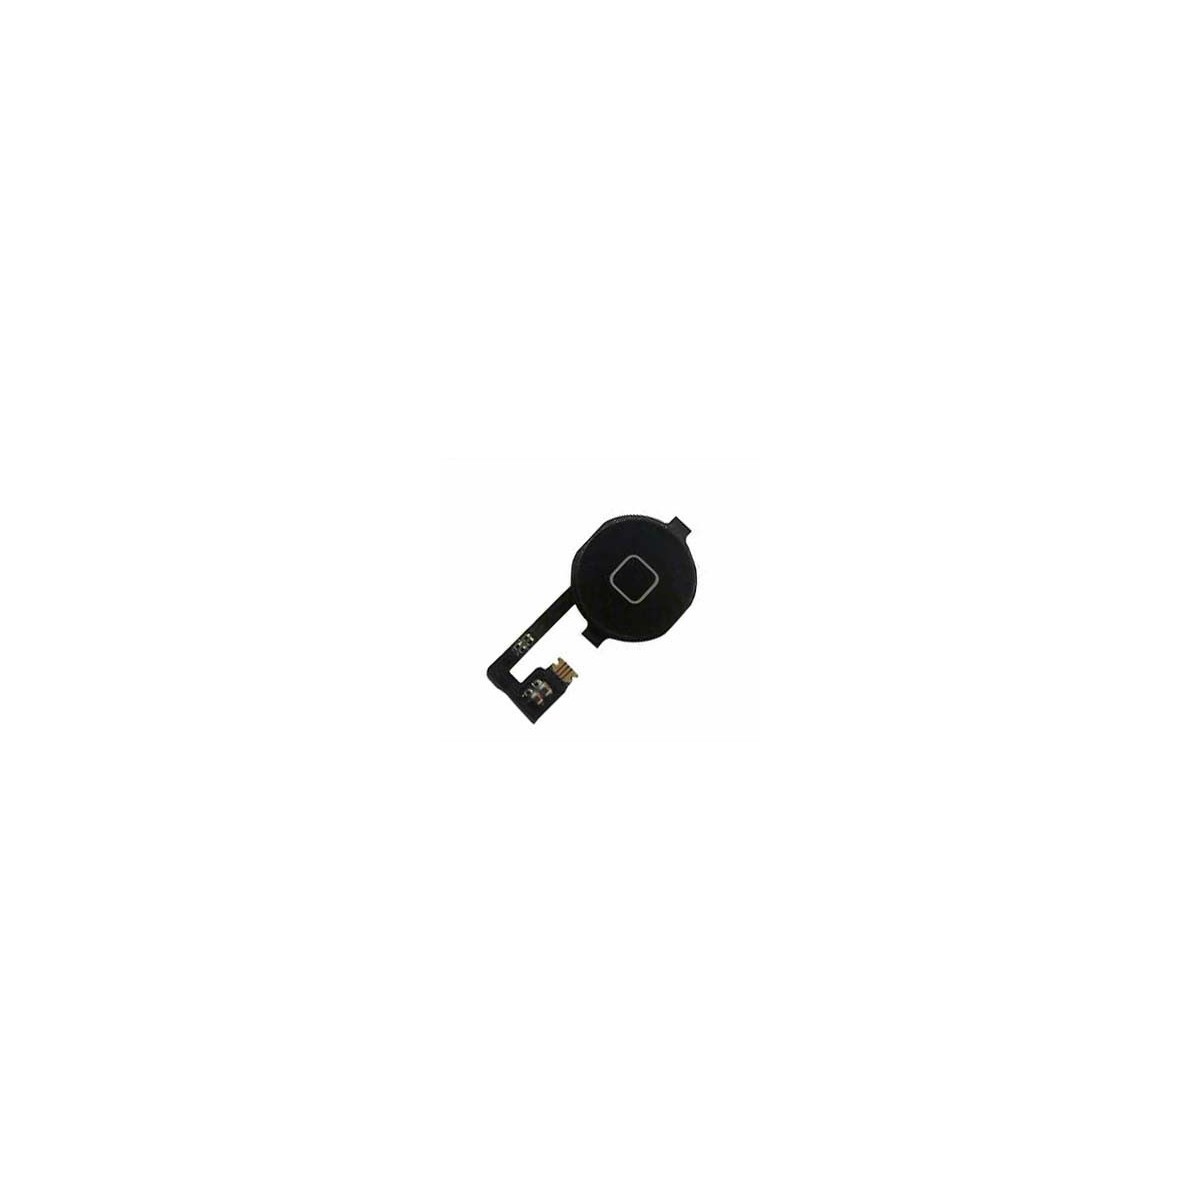 Home Button  Flex Kabel Cable für Apple iPhone 4S schwarz